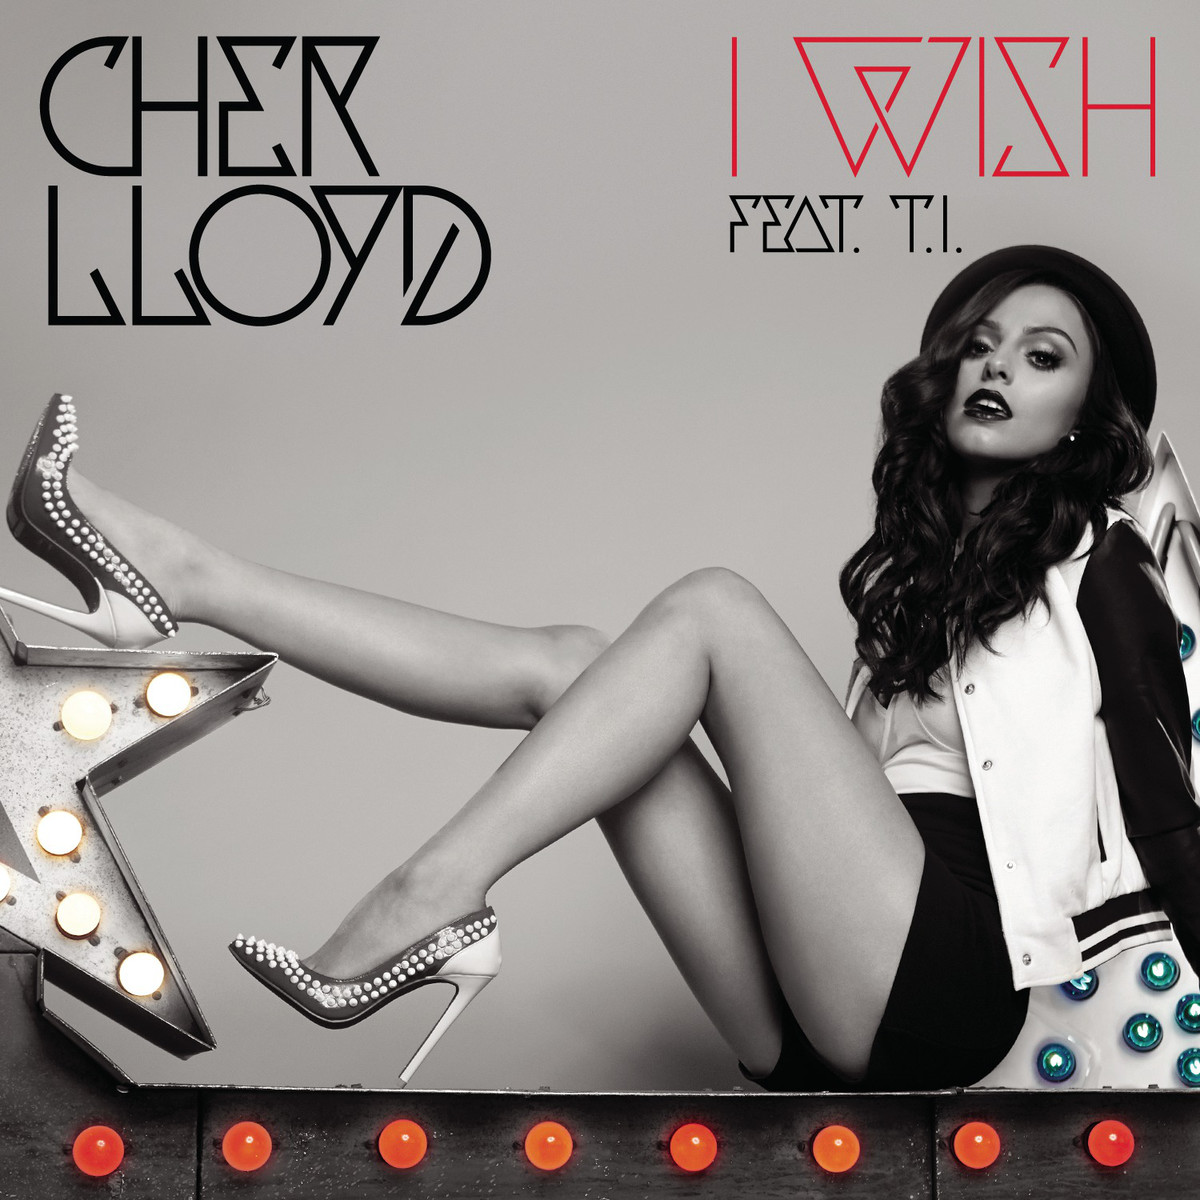 Cher Lloyd – I Wish ft. T.I